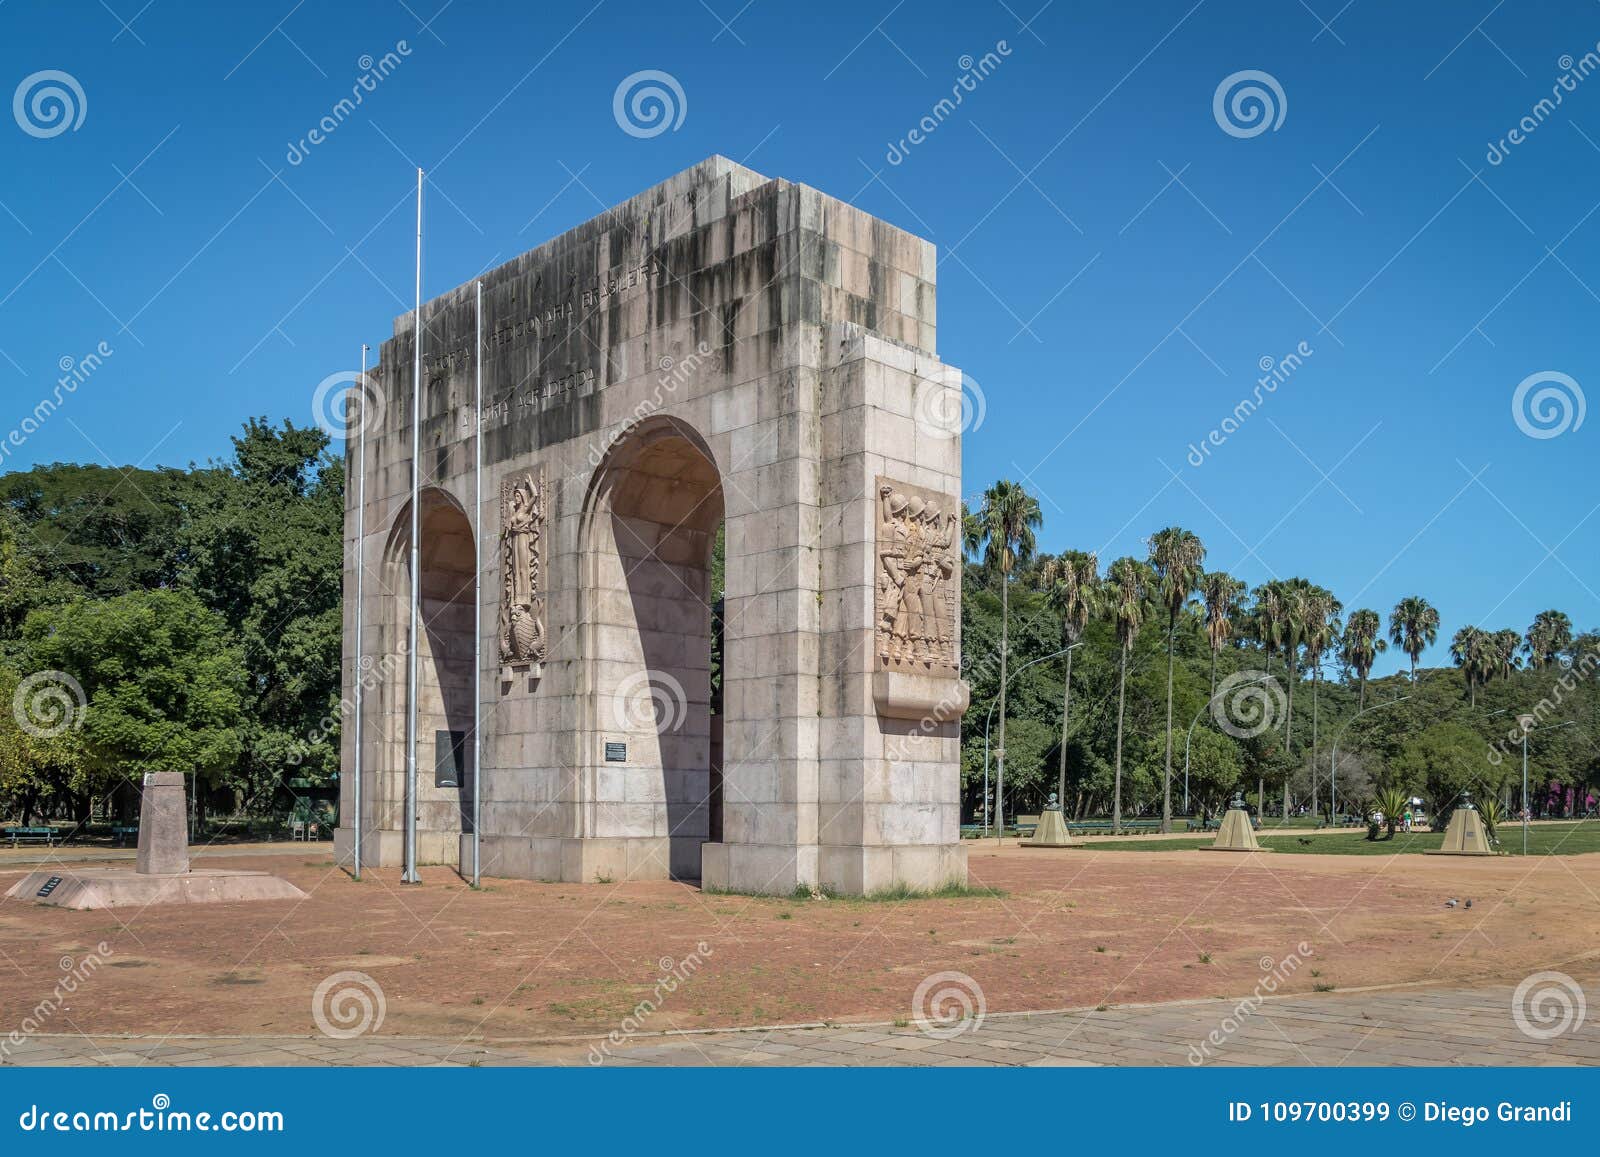 expedicionario monument arches at farroupilha park or redencao park in porto alegre, rio grande do sul, brazil